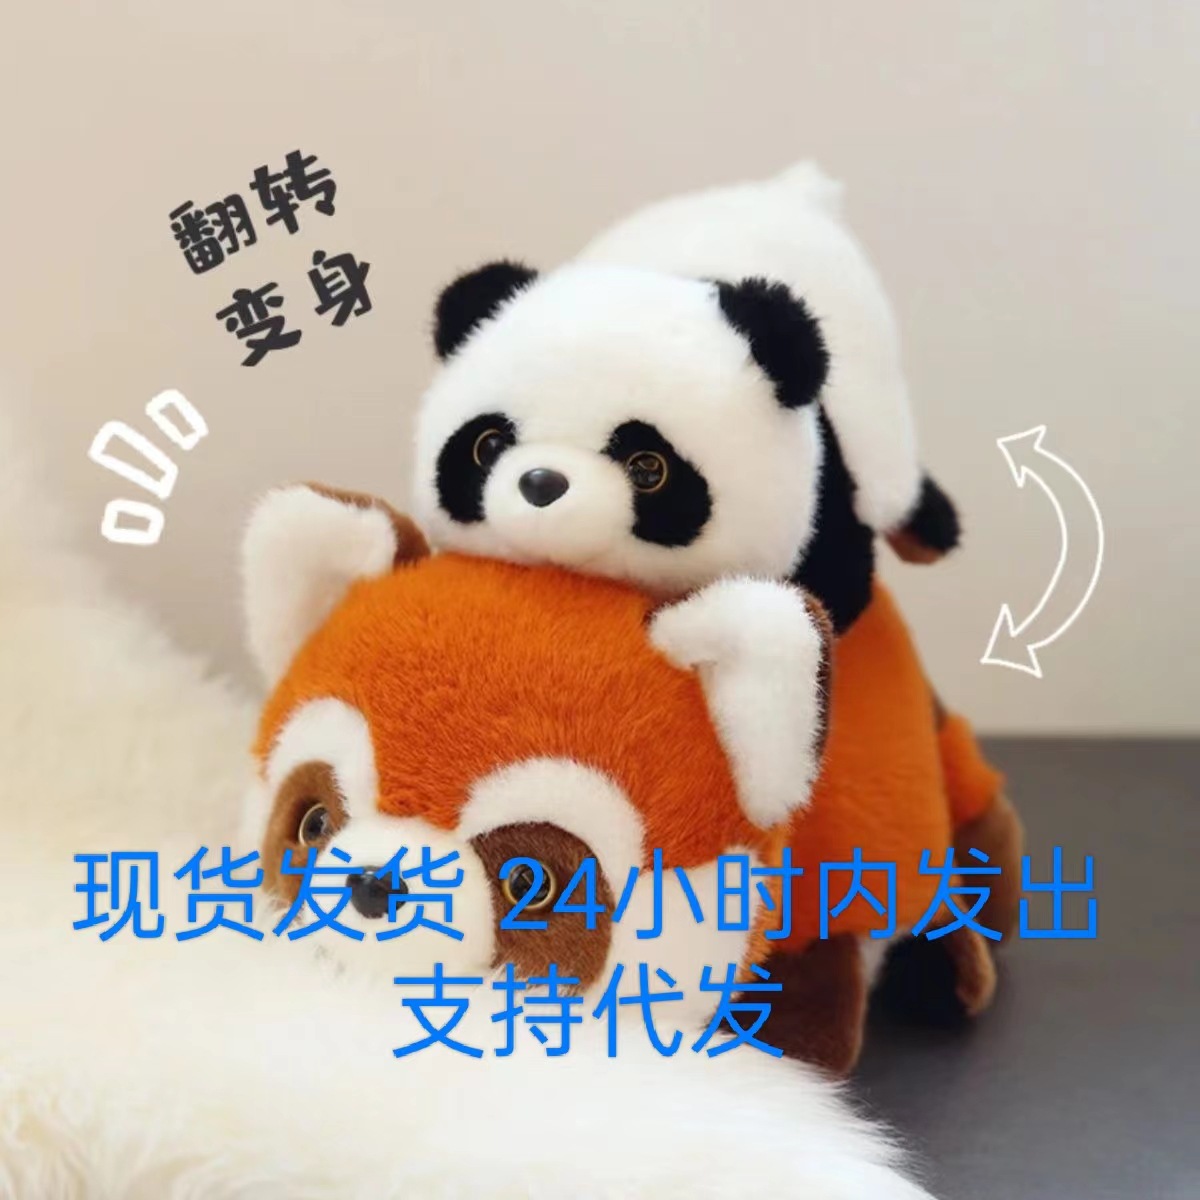 变身熊猫翻转熊猫毛绒玩具大熊猫玩偶小熊猫公仔礼物生日礼物